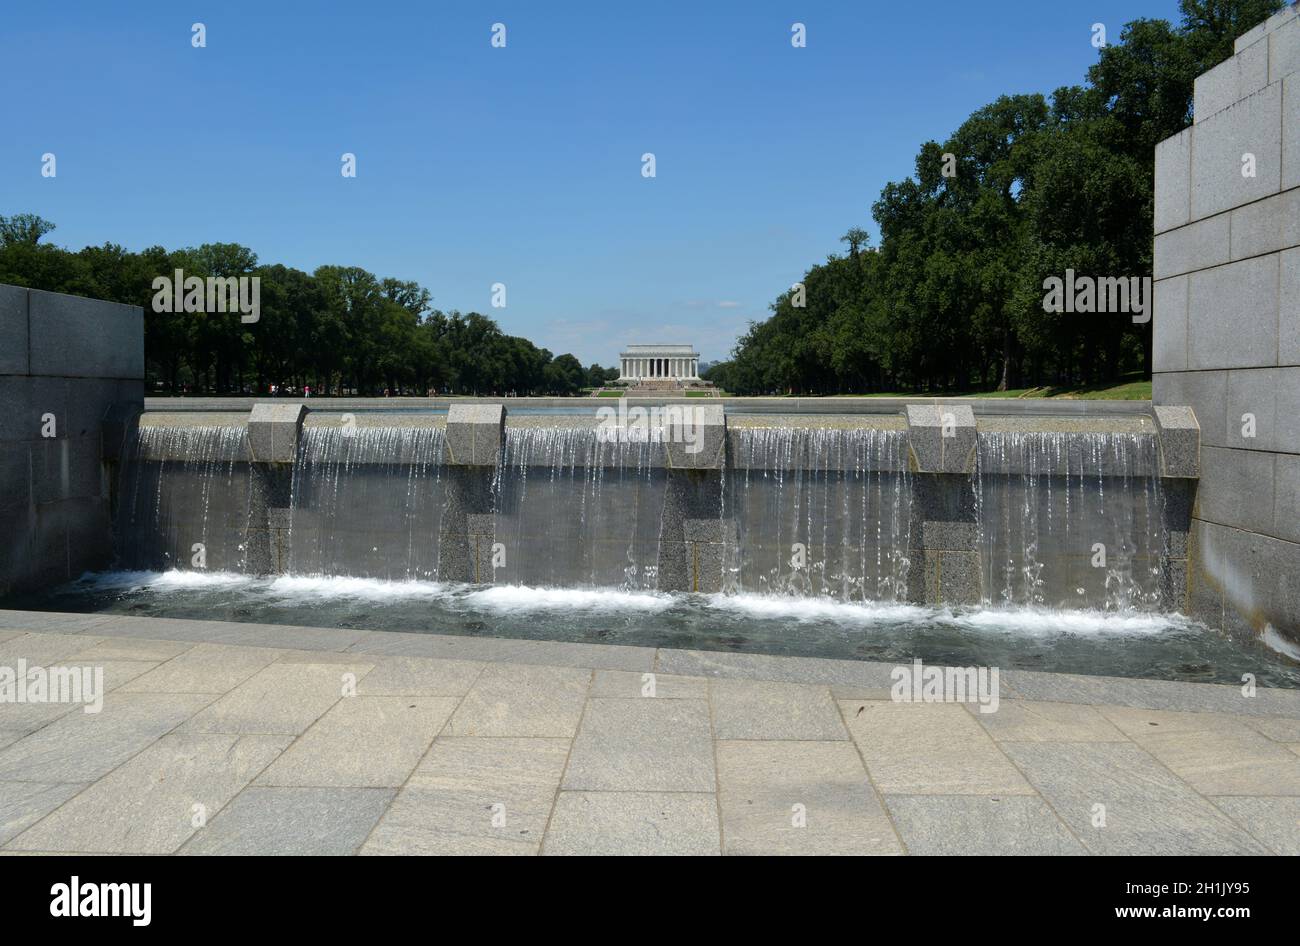 Mémorial de la Seconde Guerre mondiale, National Mall, Washington DC, États-Unis Banque D'Images